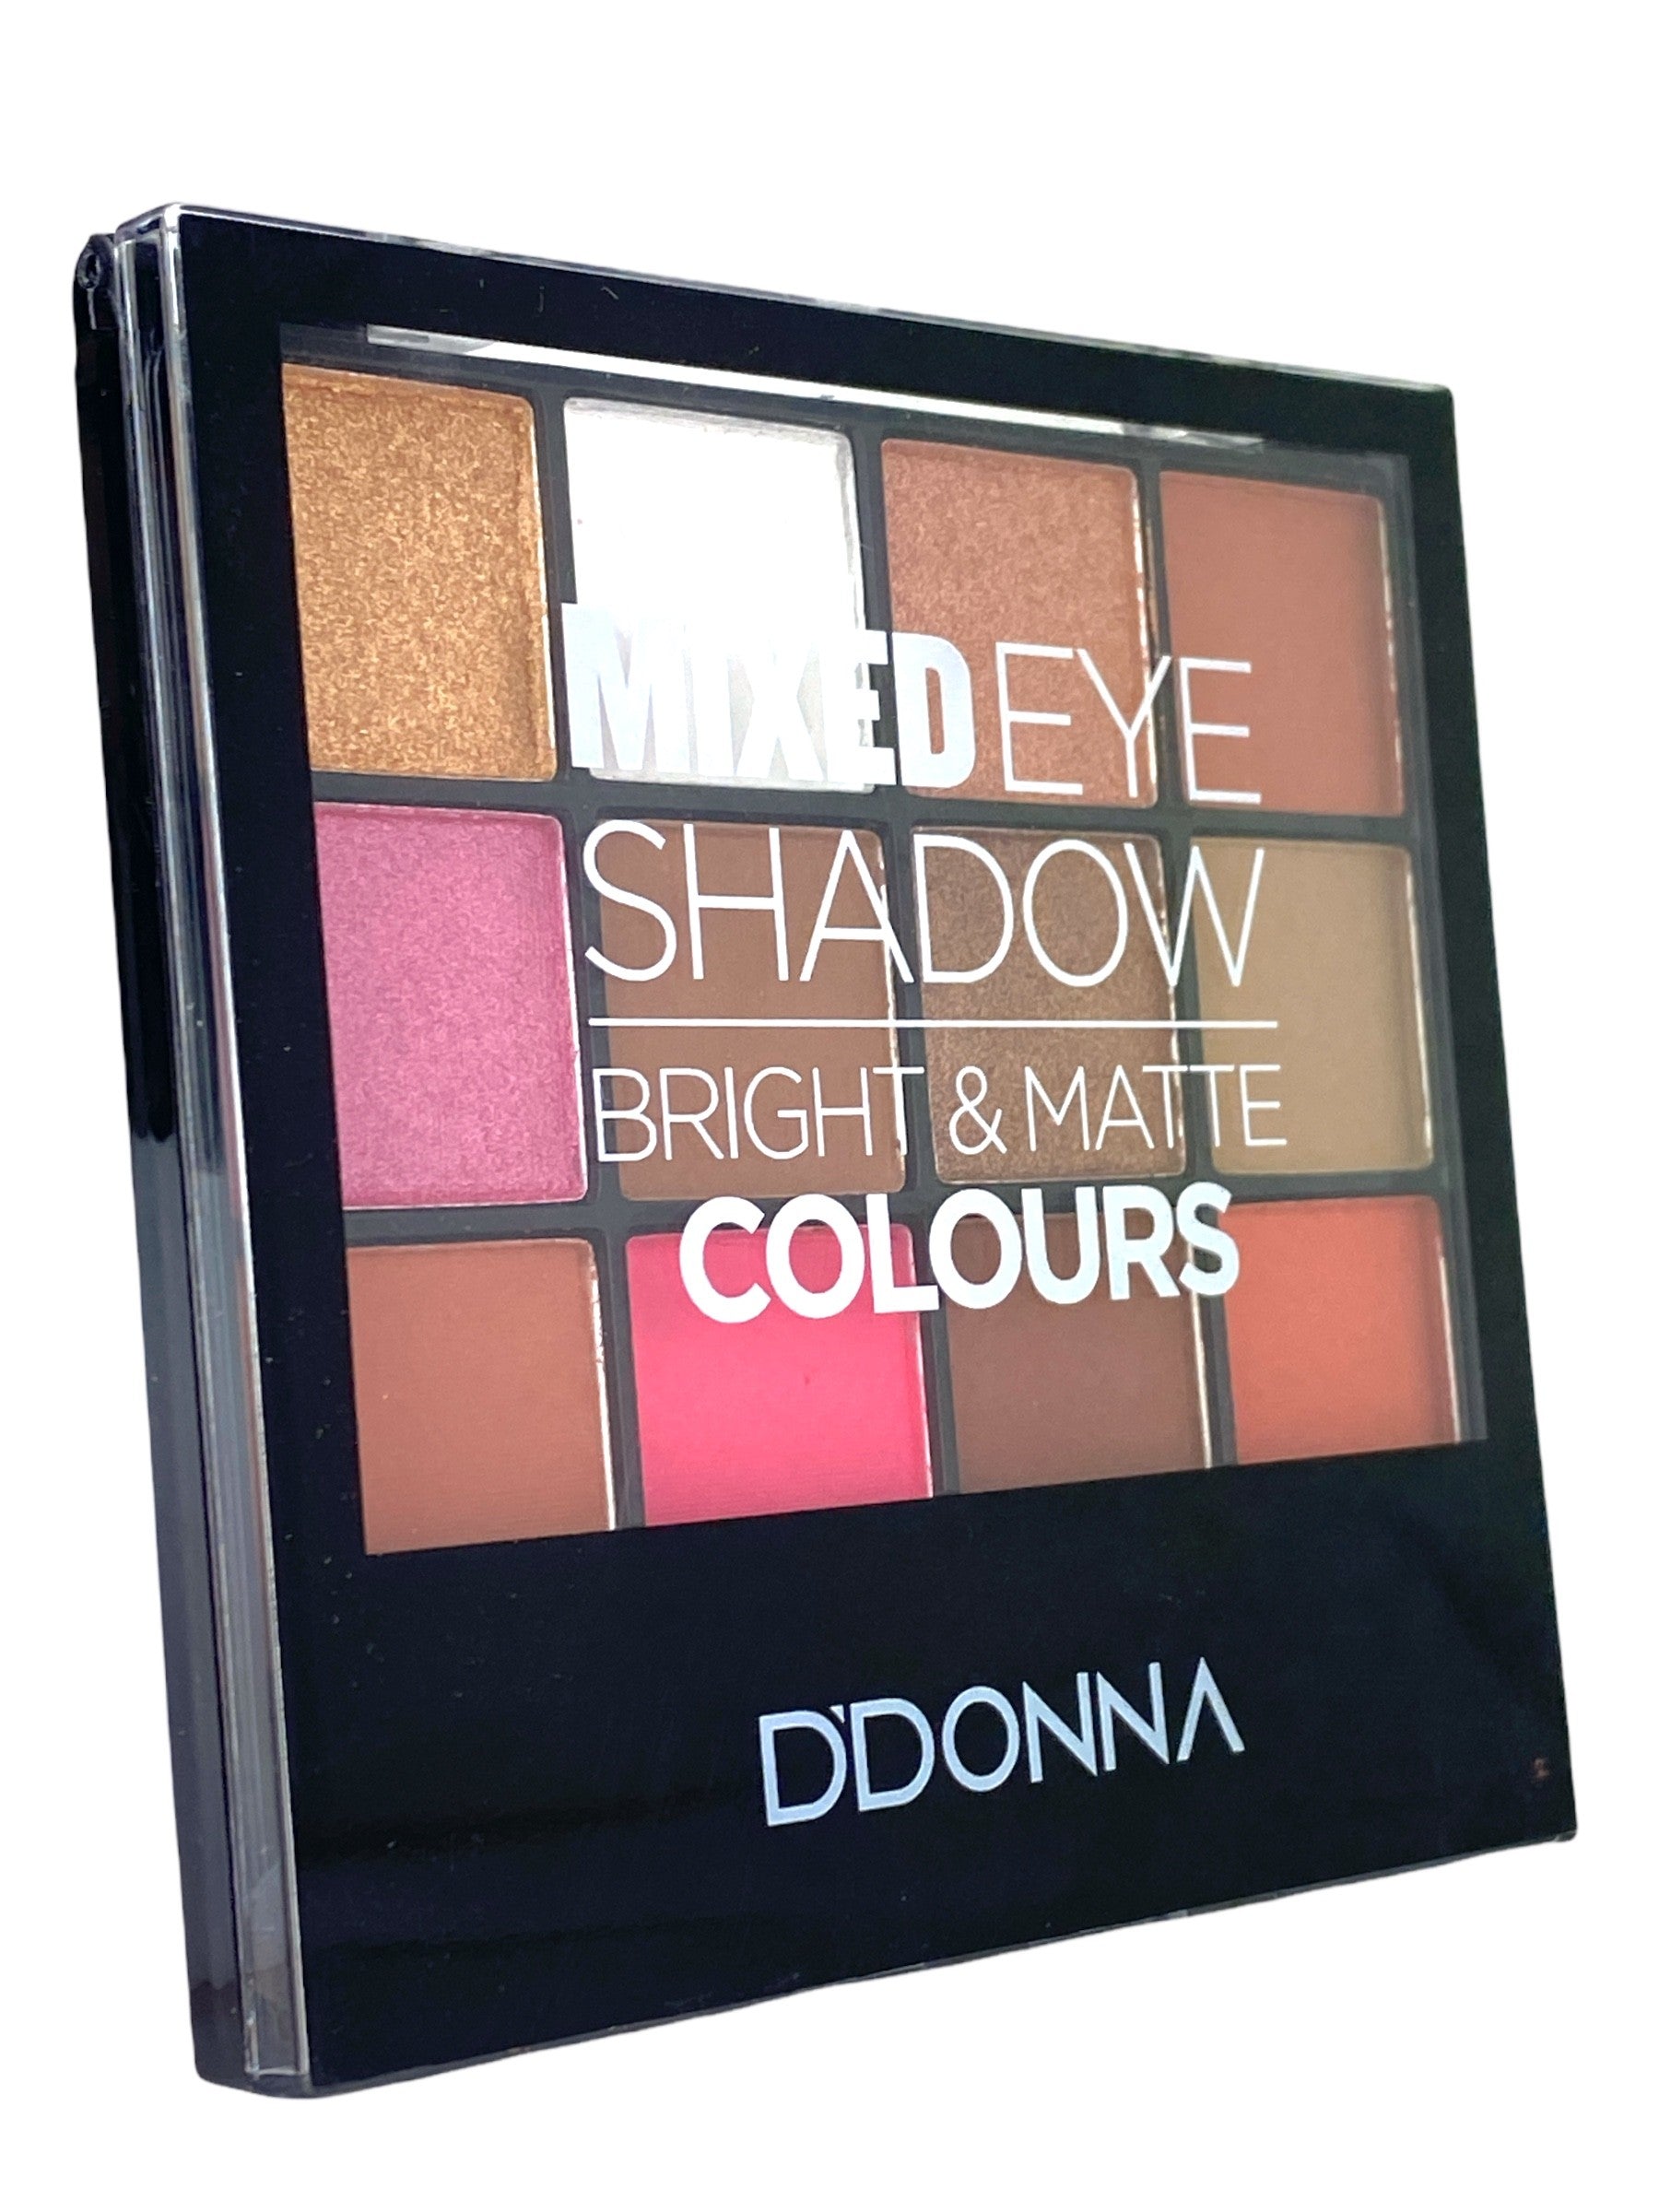 Multi-Paleta "Mixed eyeshadow" 12 colores + aplicador Nº 1 - D'Donna